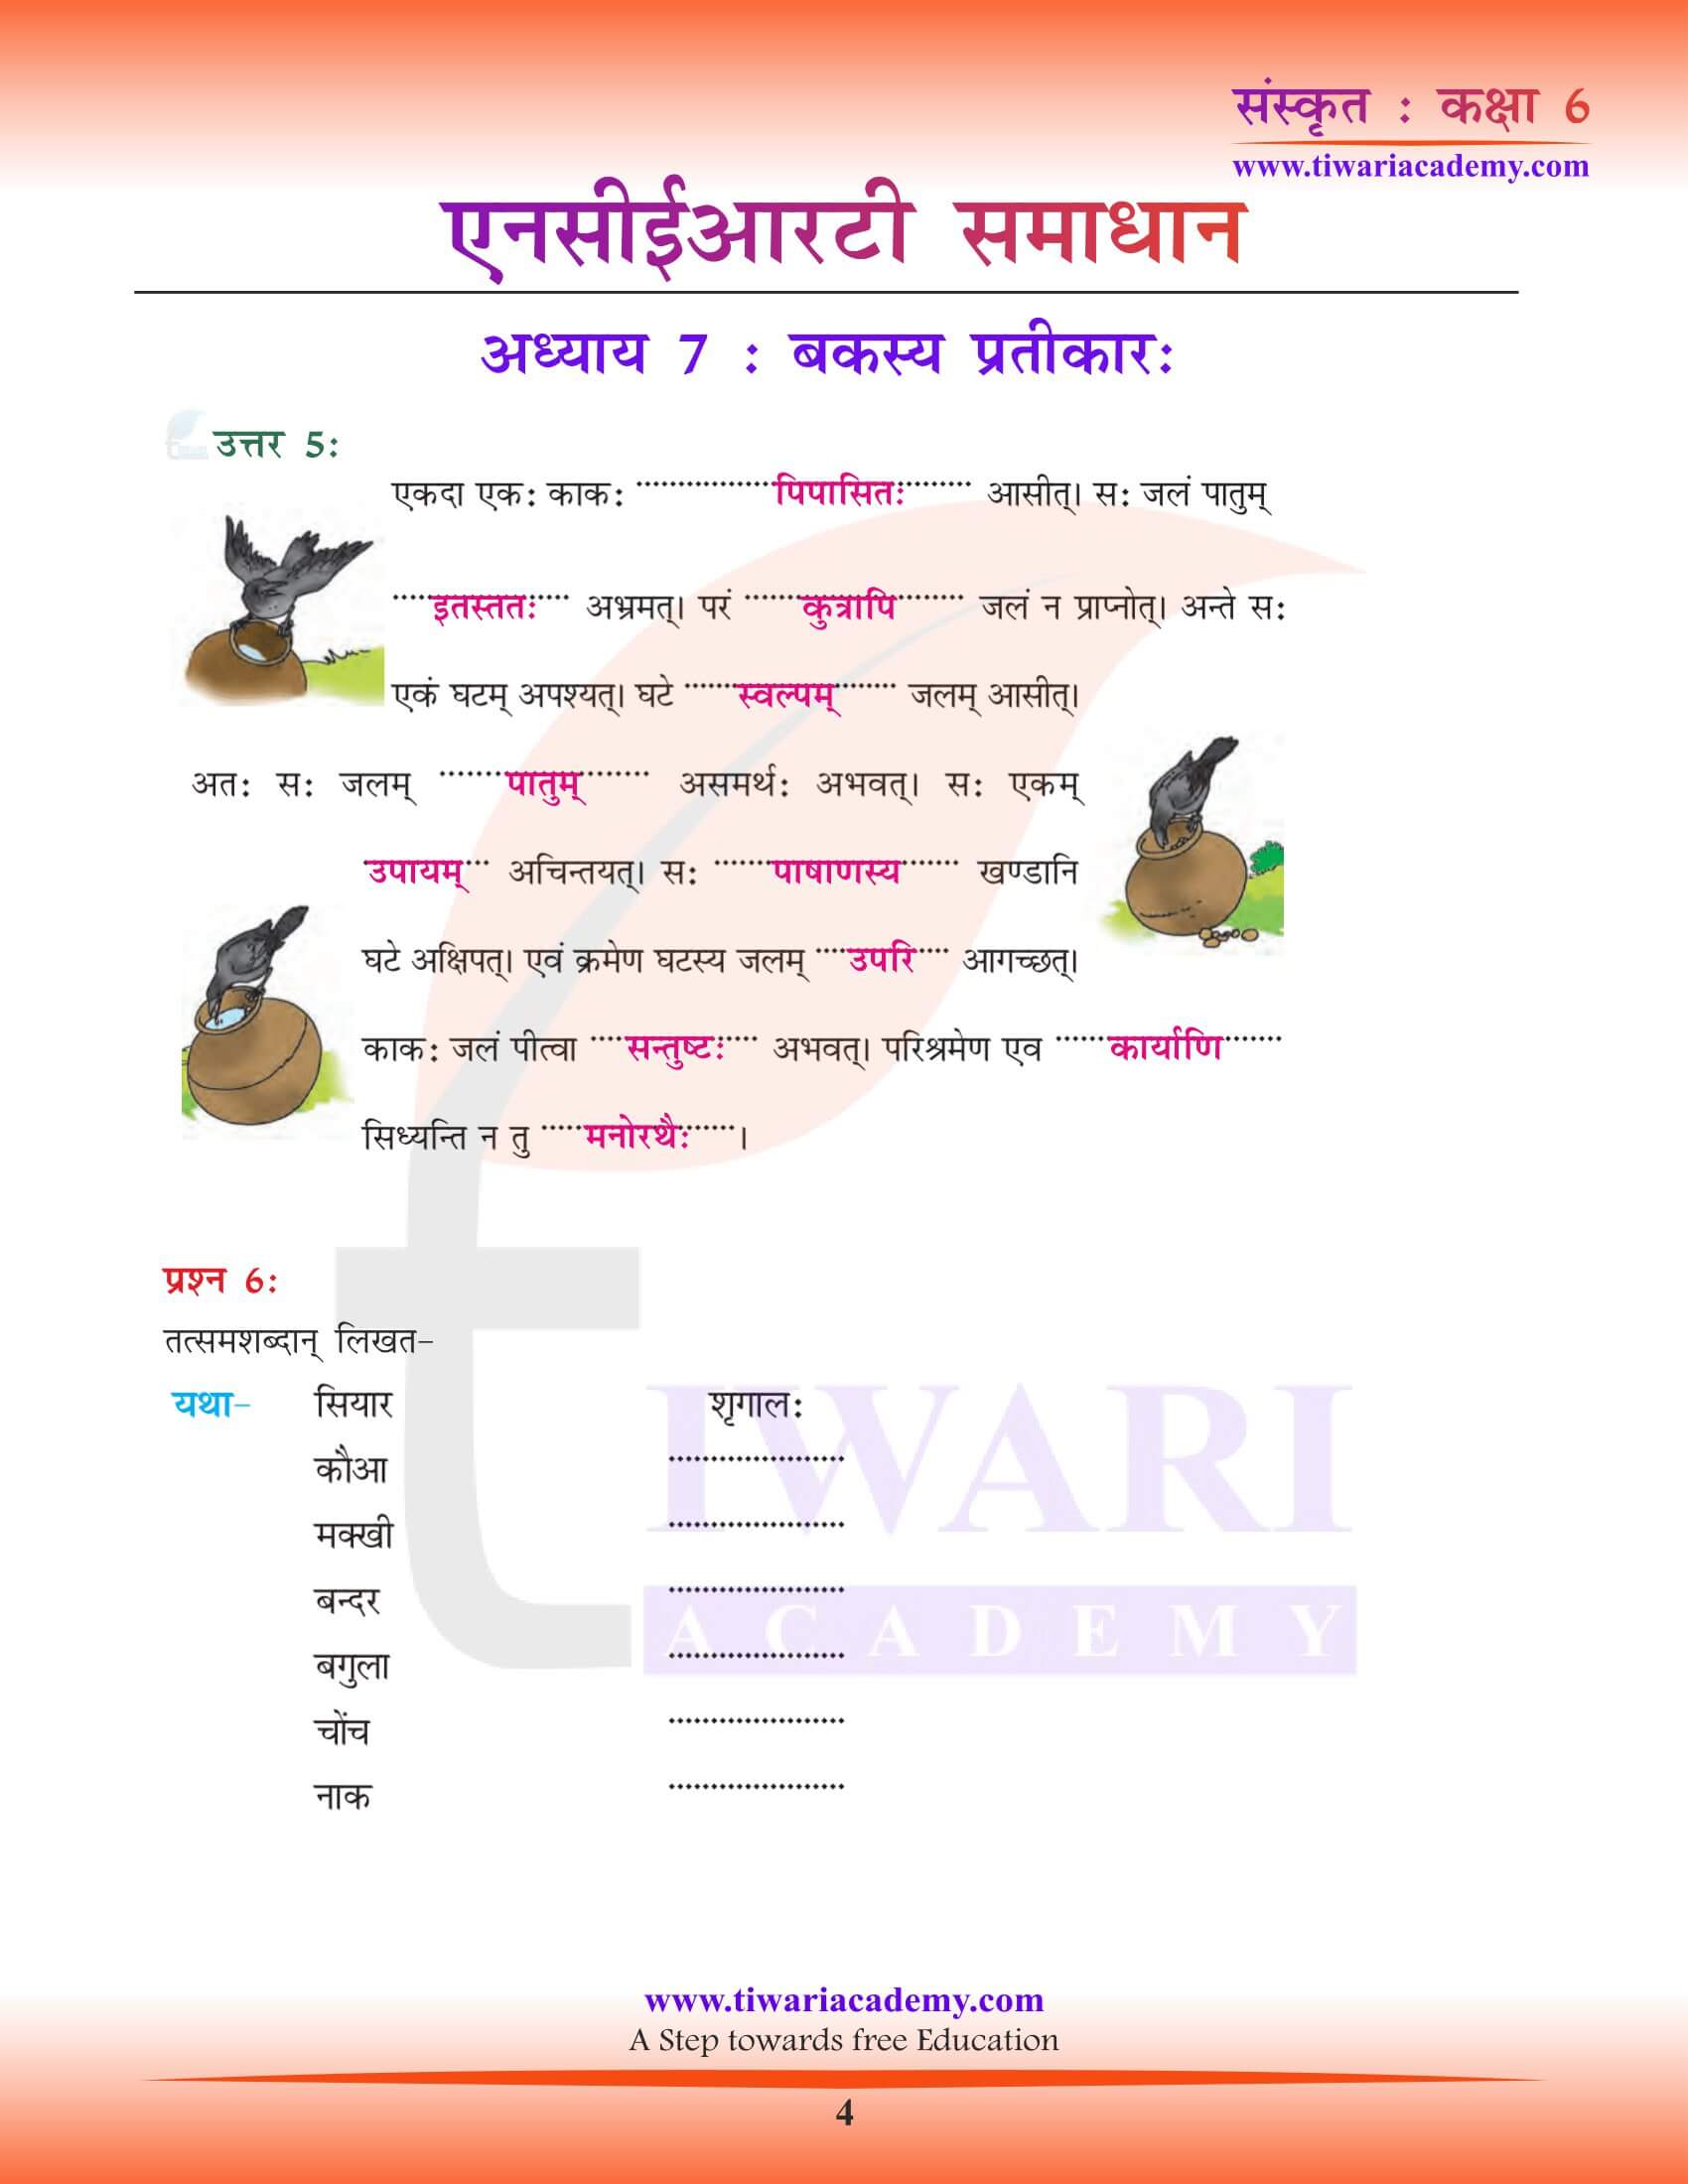 एनसीईआरटी समाधान कक्षा 6 संस्कृत पाठ 7 की गाइड हिंदी में